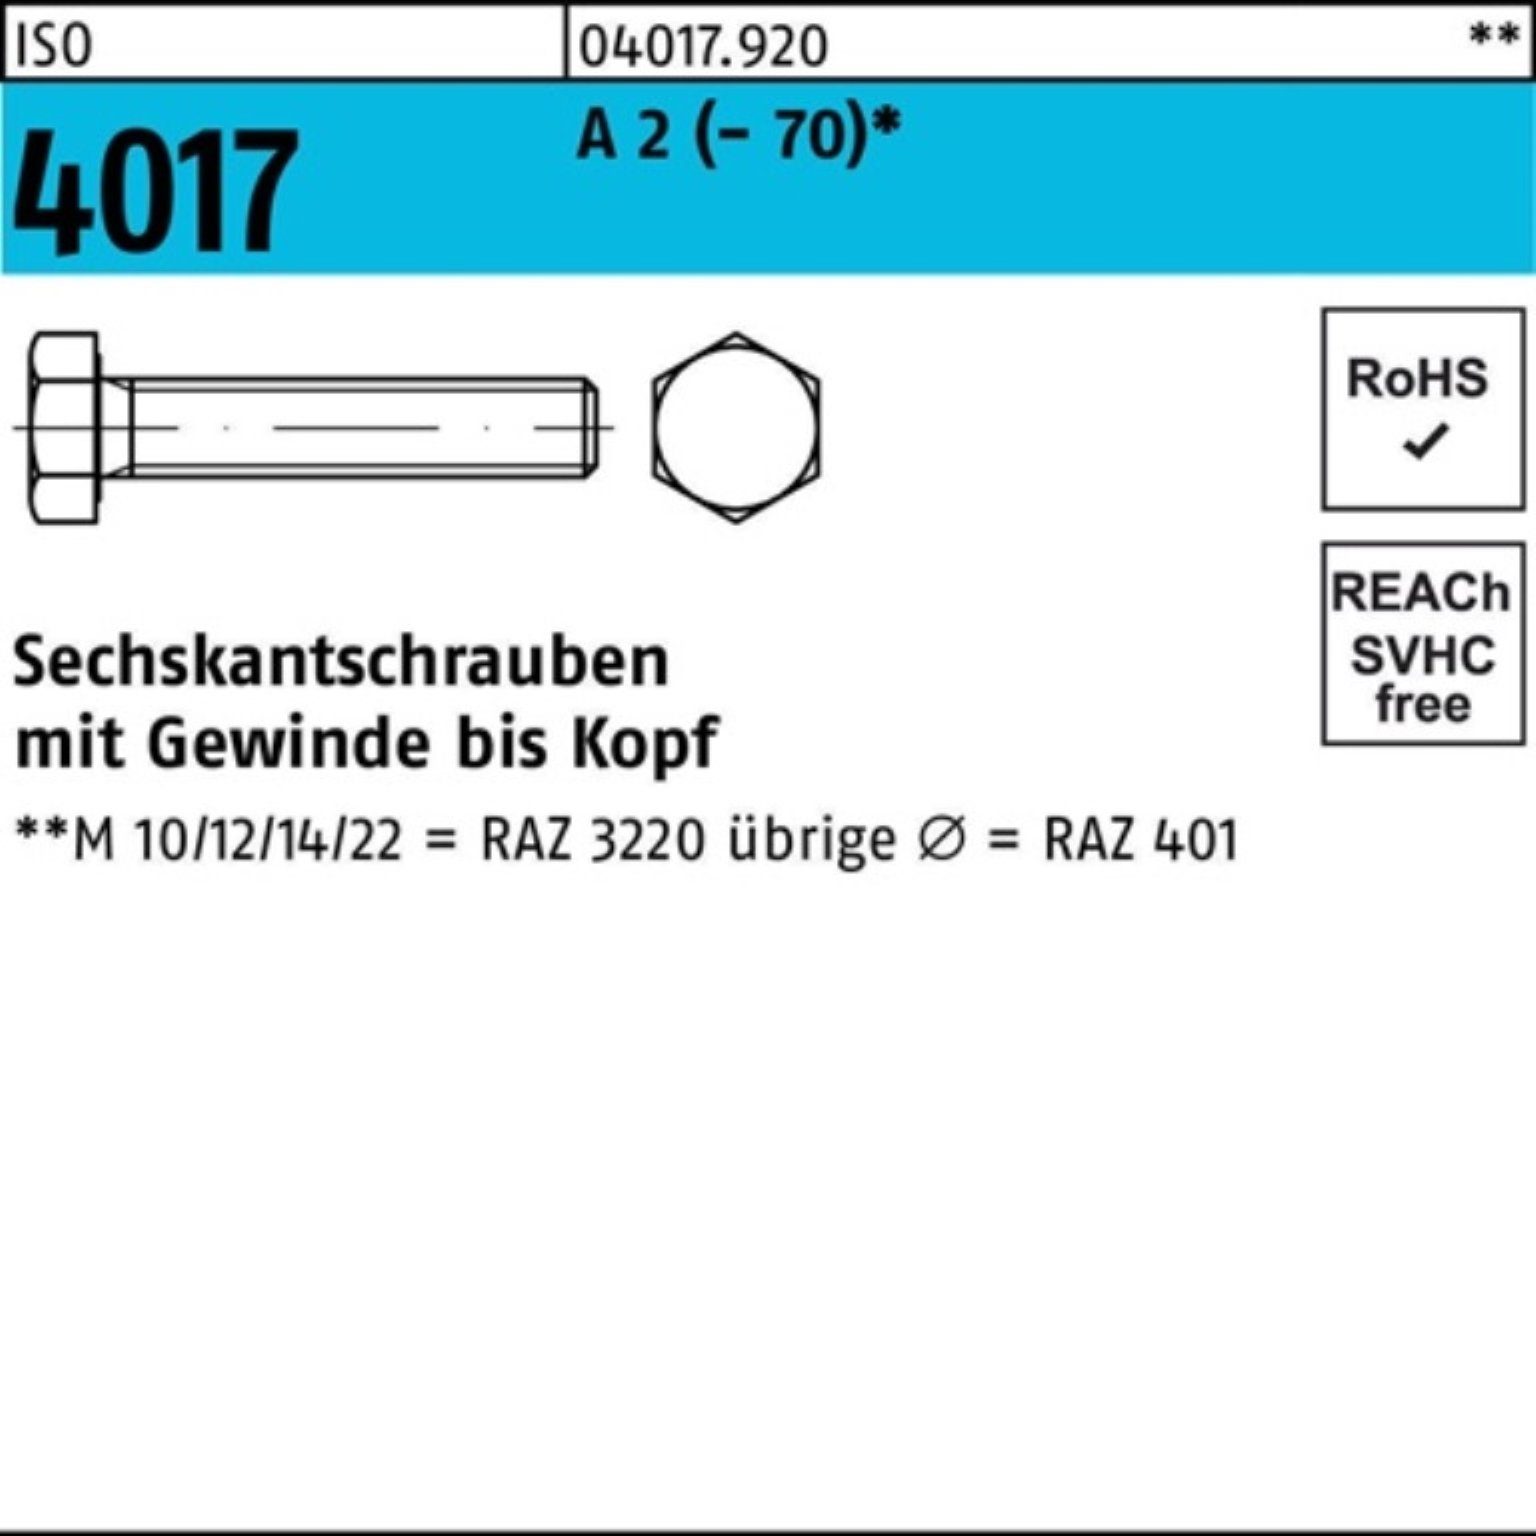 Bufab Sechskantschraube 100er Pack Sechskantschraube ISO 4017 VG M27x 80 A 2 (70) 1 Stück I